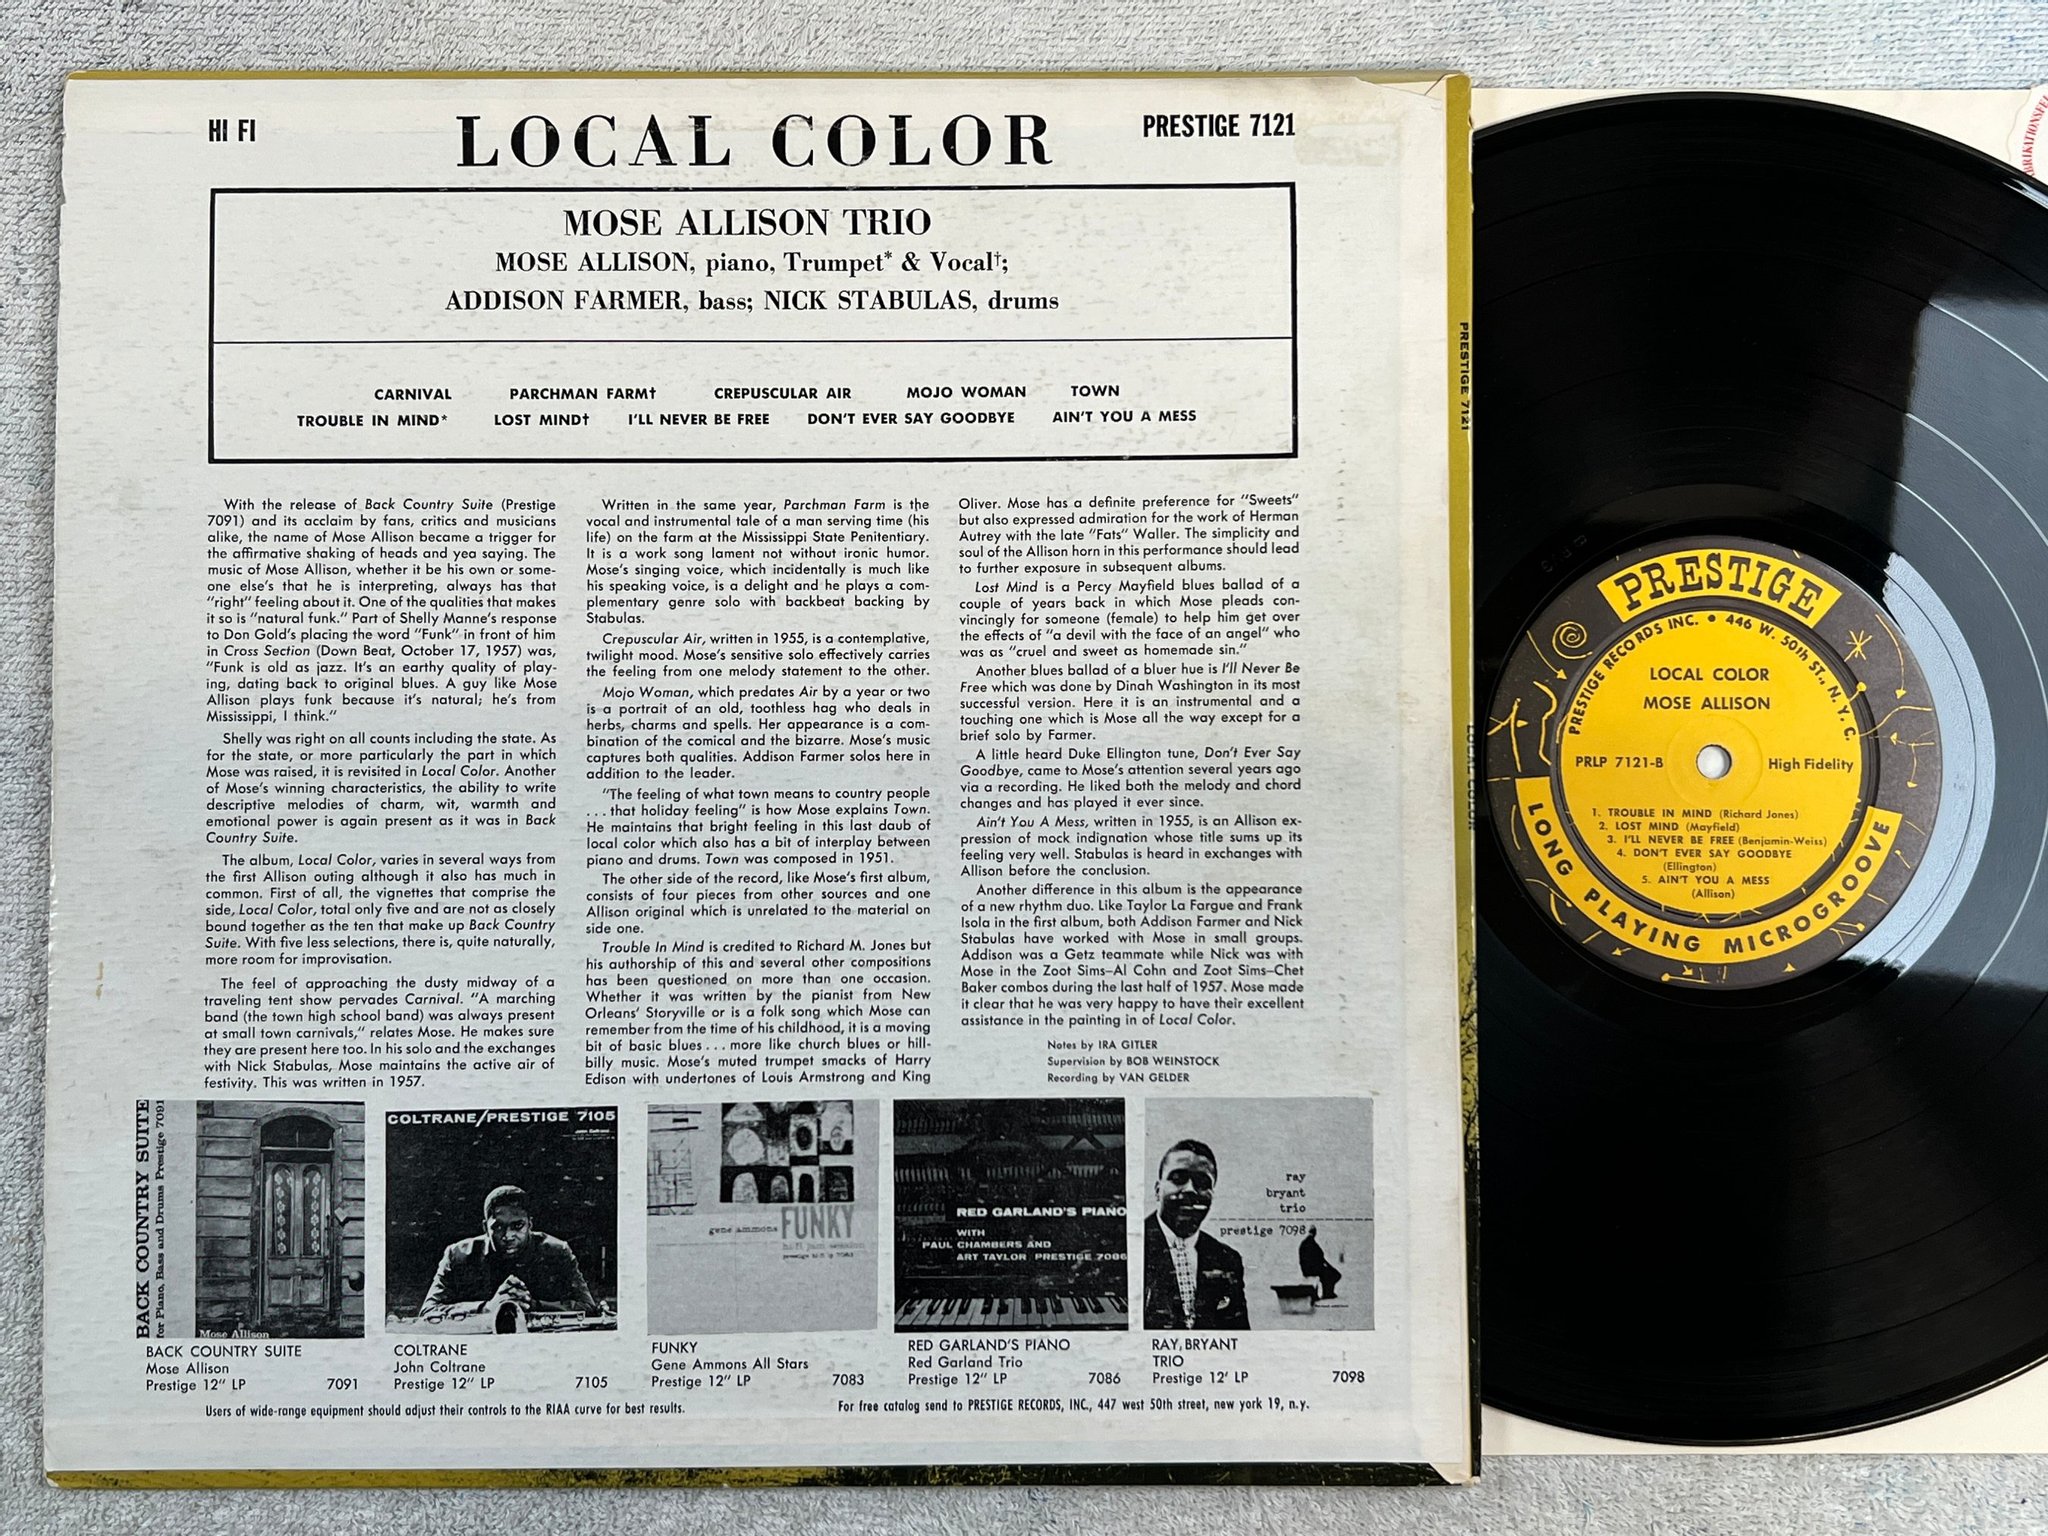 Omslagsbild för skivan MOSE ALLISON local color LP -58 US PRESTIGE PRLP 7121 446 W. 50th St NYC adress